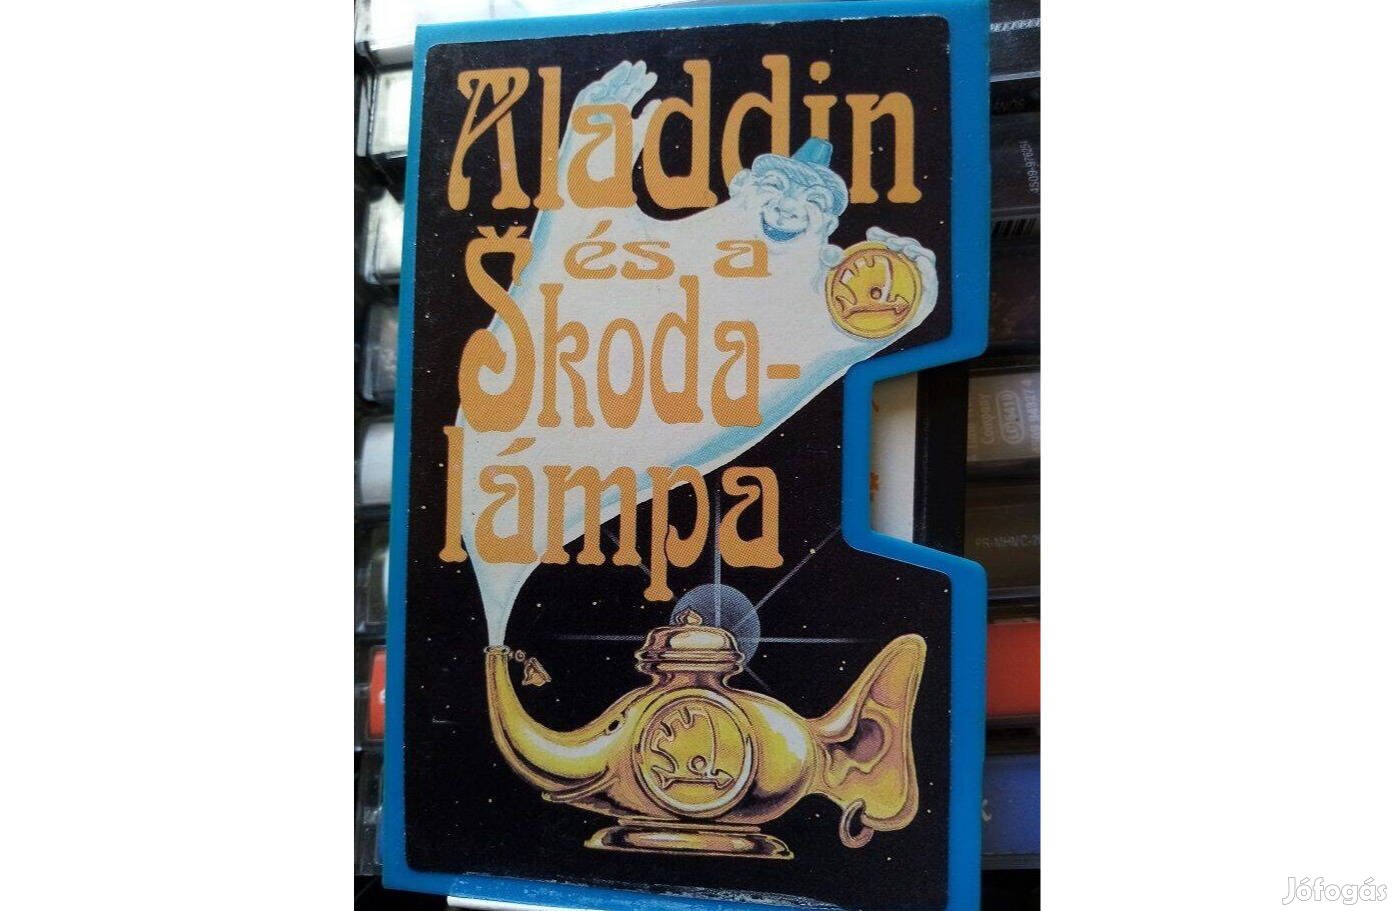 'Aladdin és a Skodalámpa' - a humorválogatott zeneszámai